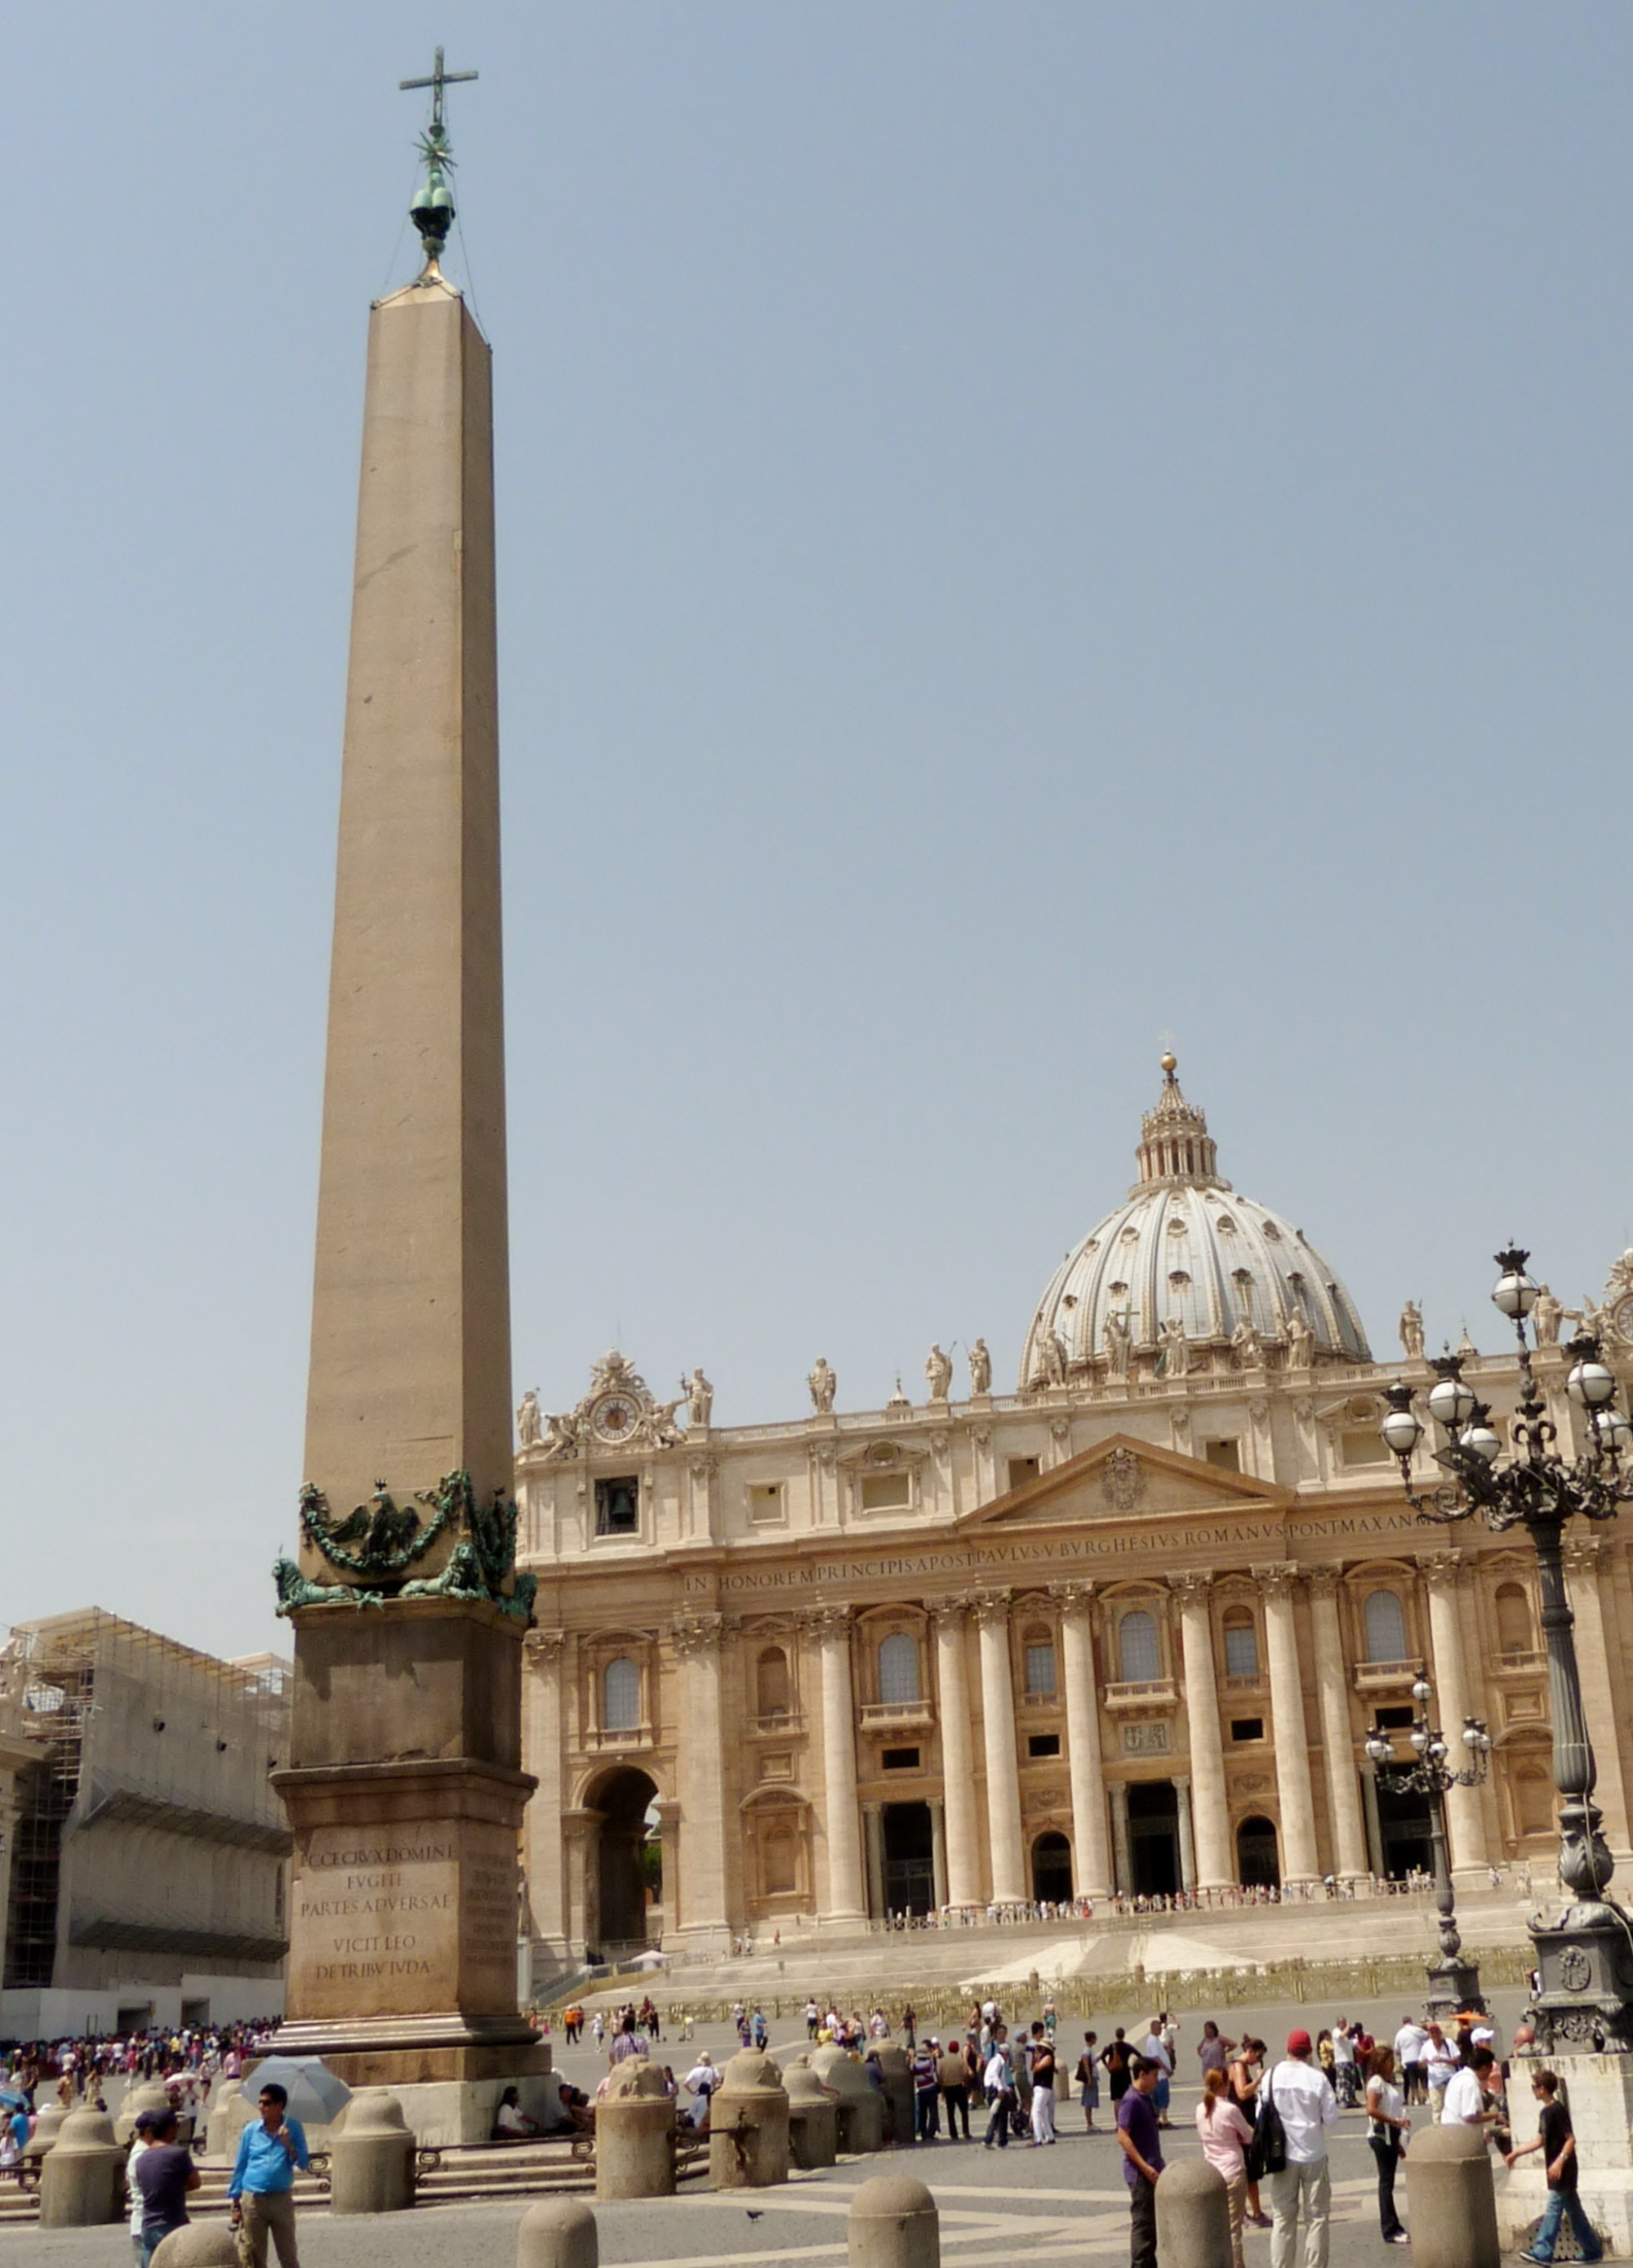 Obelisk of St Peter's Square